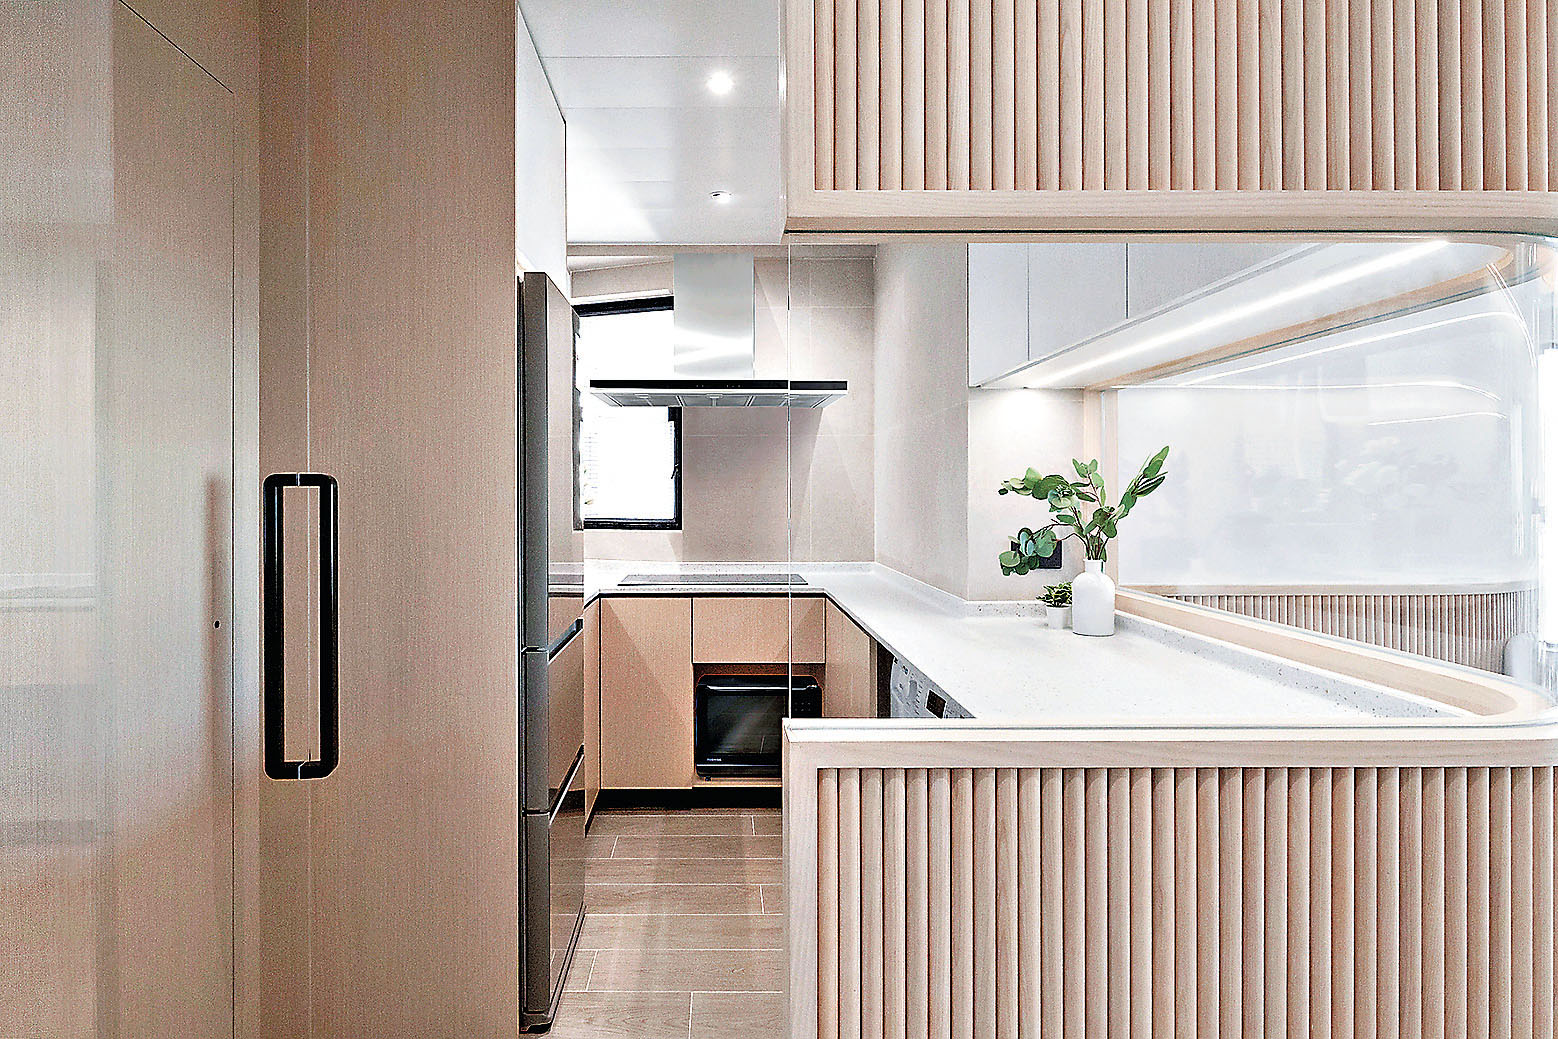 ■廚房一道特色條子和玻璃間隔屏風，美觀又增加空間感。